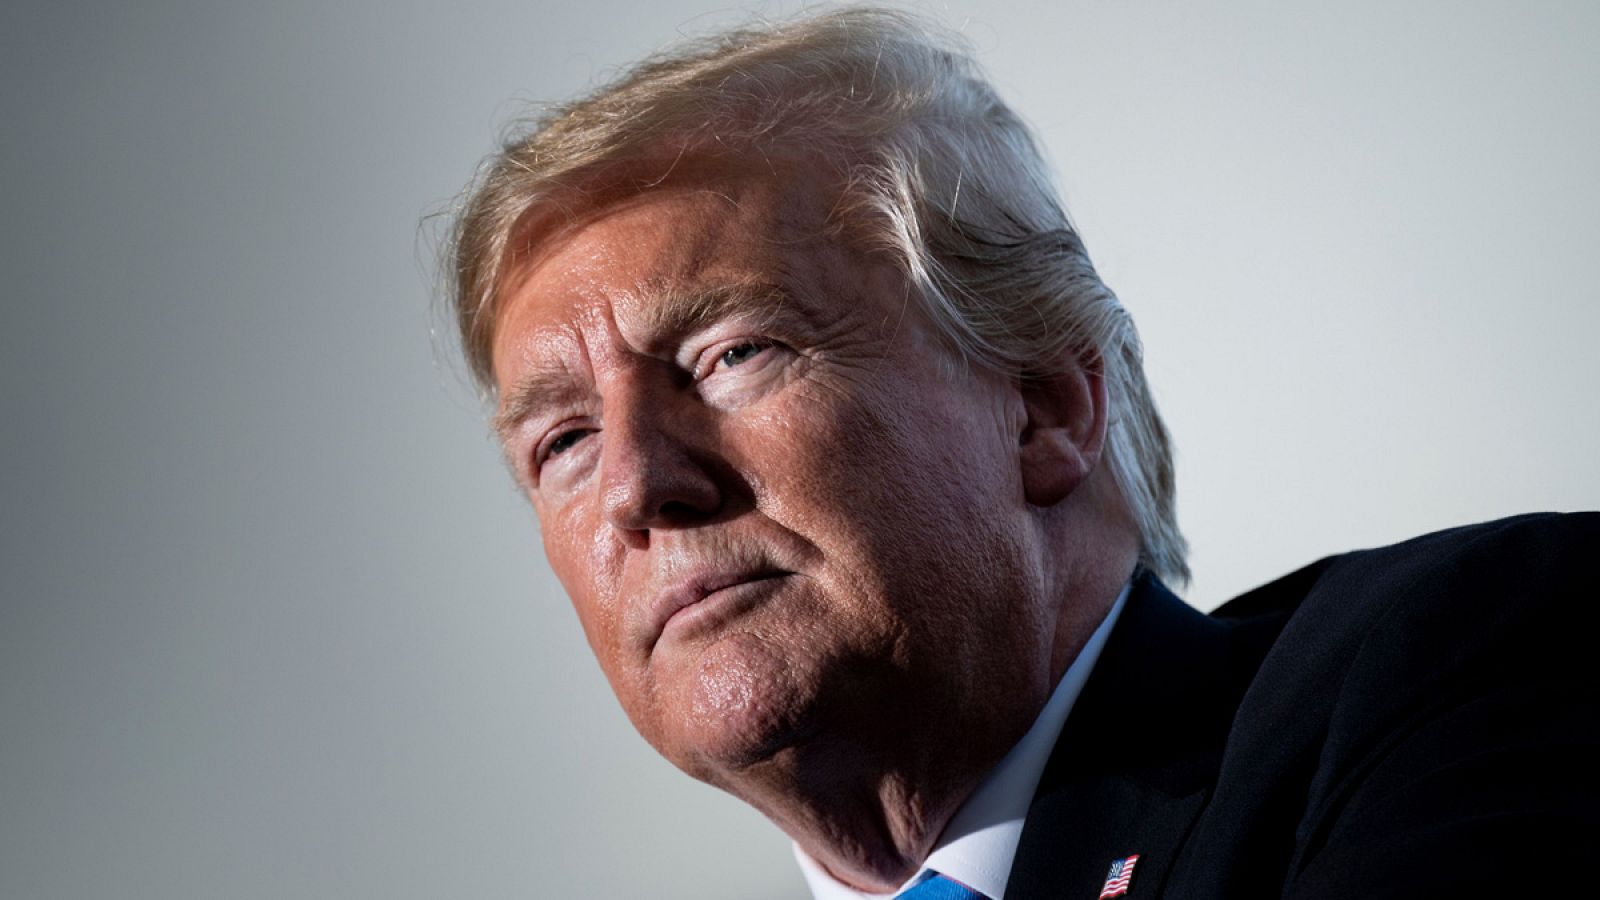 El presidente de Estados Unidos, Donald Trump, en una fotografía tomada el 14 de mayo de 2019